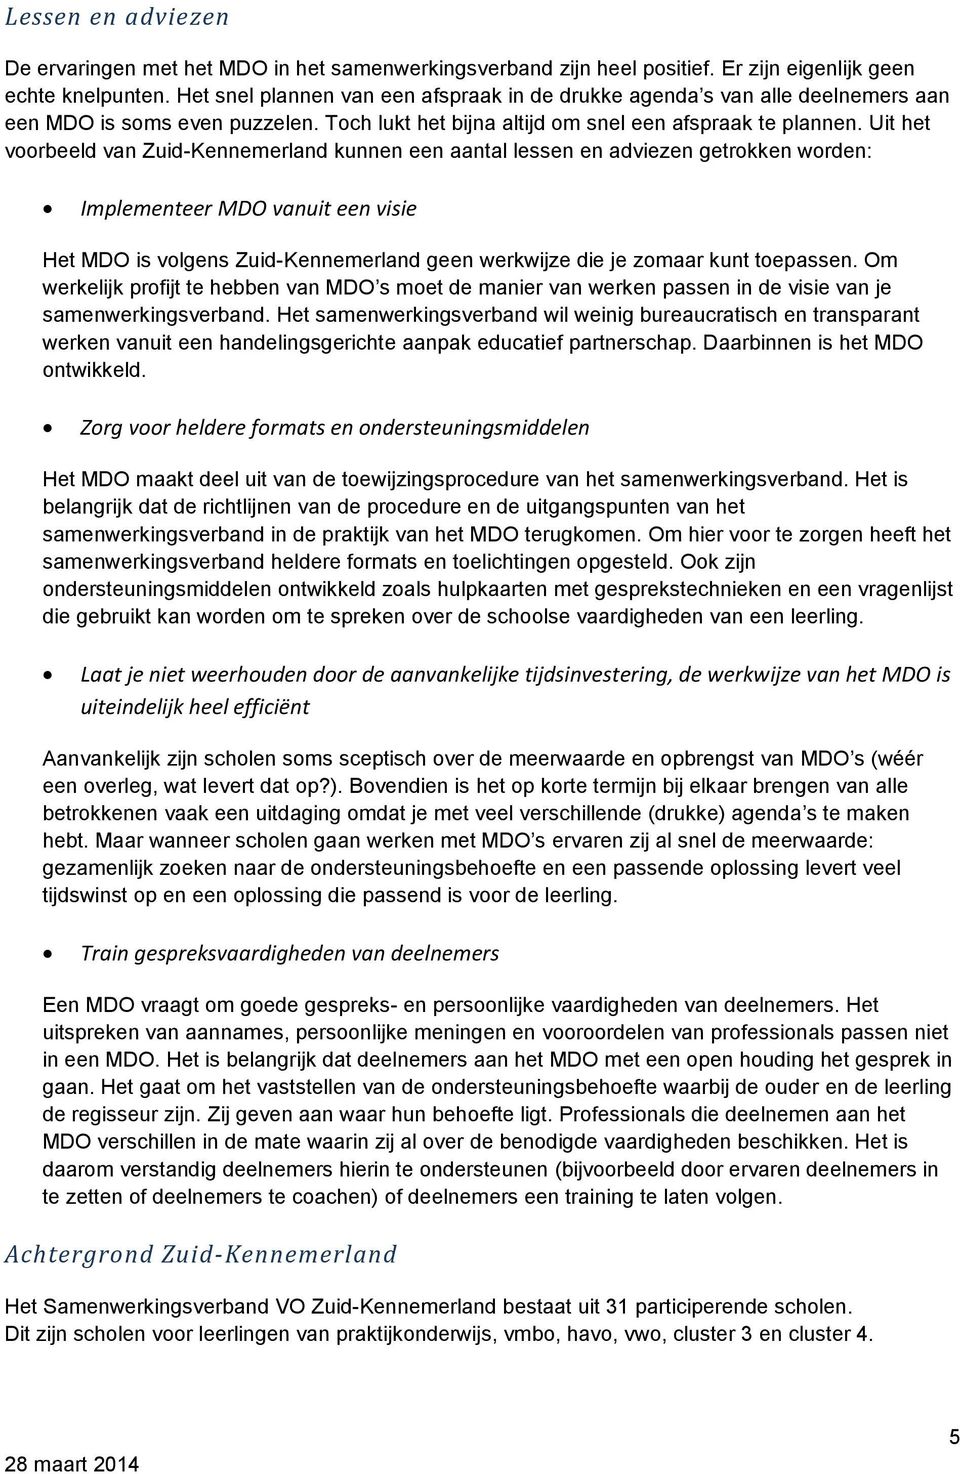 Uit het voorbeeld van Zuid-Kennemerland kunnen een aantal lessen en adviezen getrokken worden: Implementeer MDO vanuit een visie Het MDO is volgens Zuid-Kennemerland geen werkwijze die je zomaar kunt